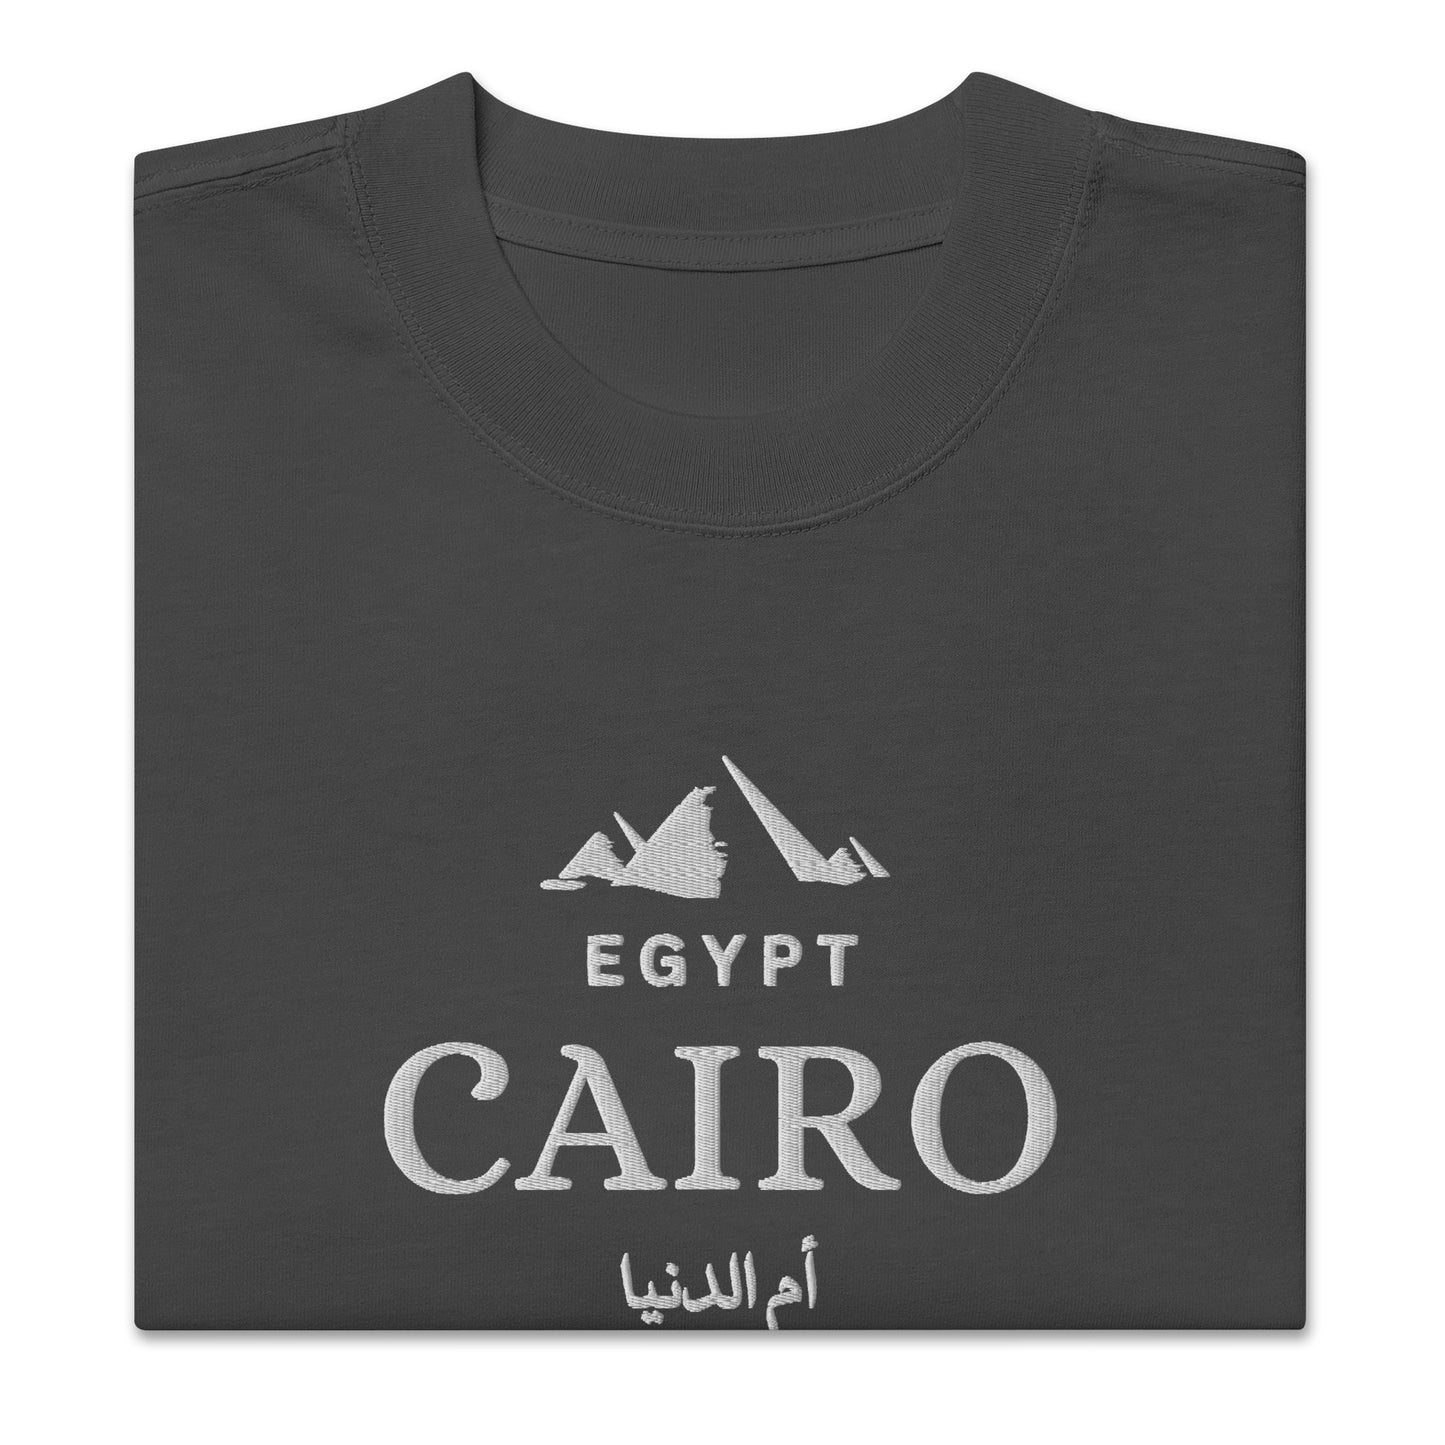 Oversized Cairo Dark faded t-shirt